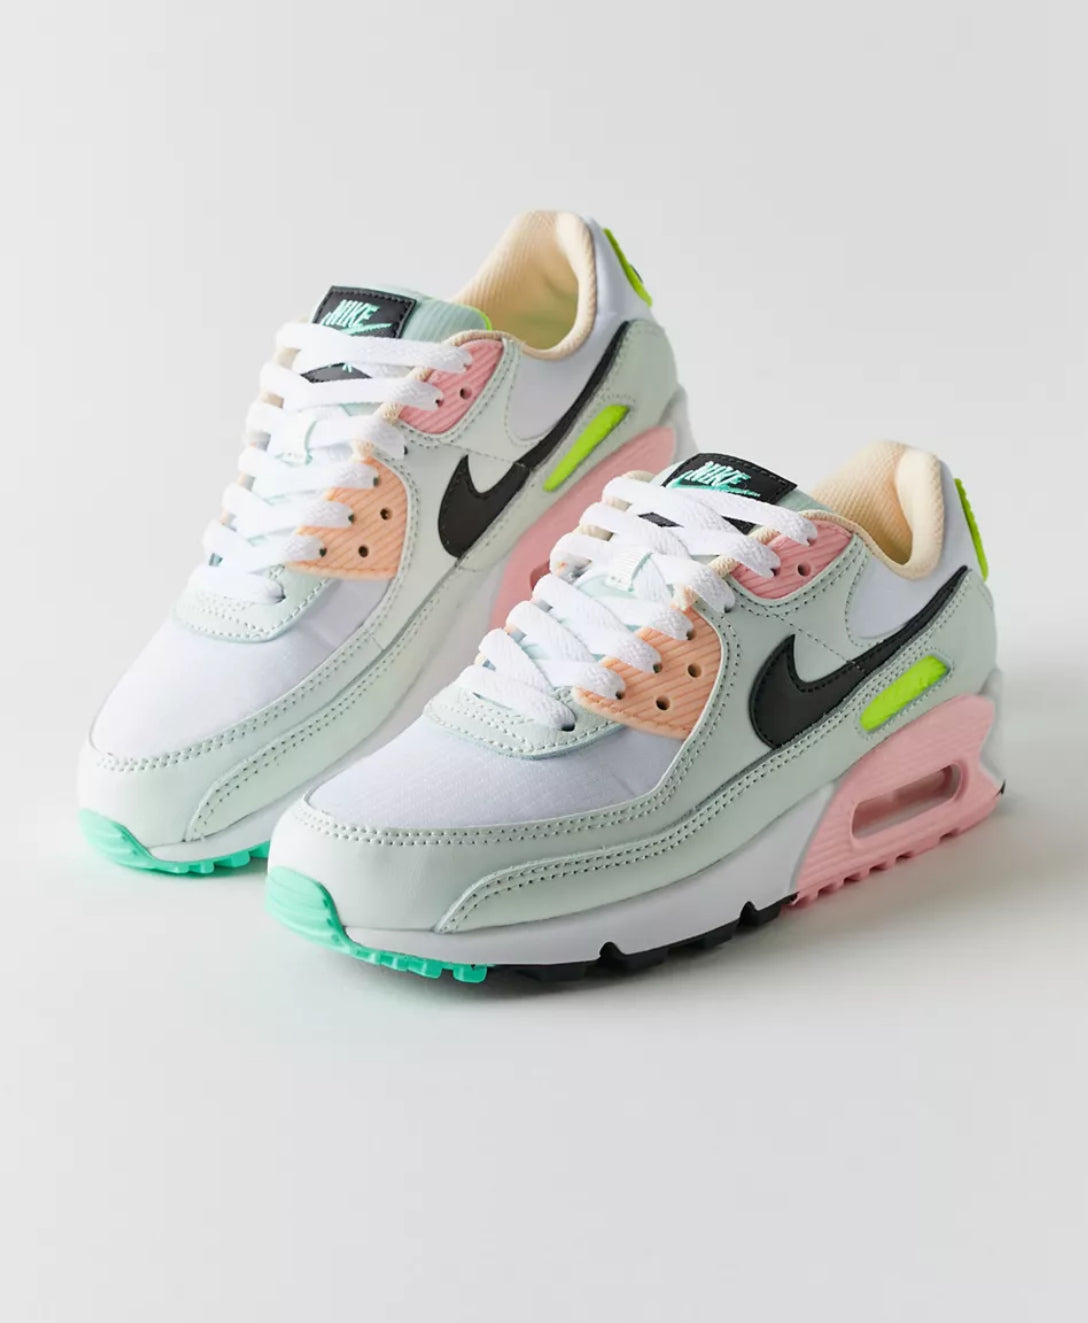 90s Pink Lemonade Sneakers